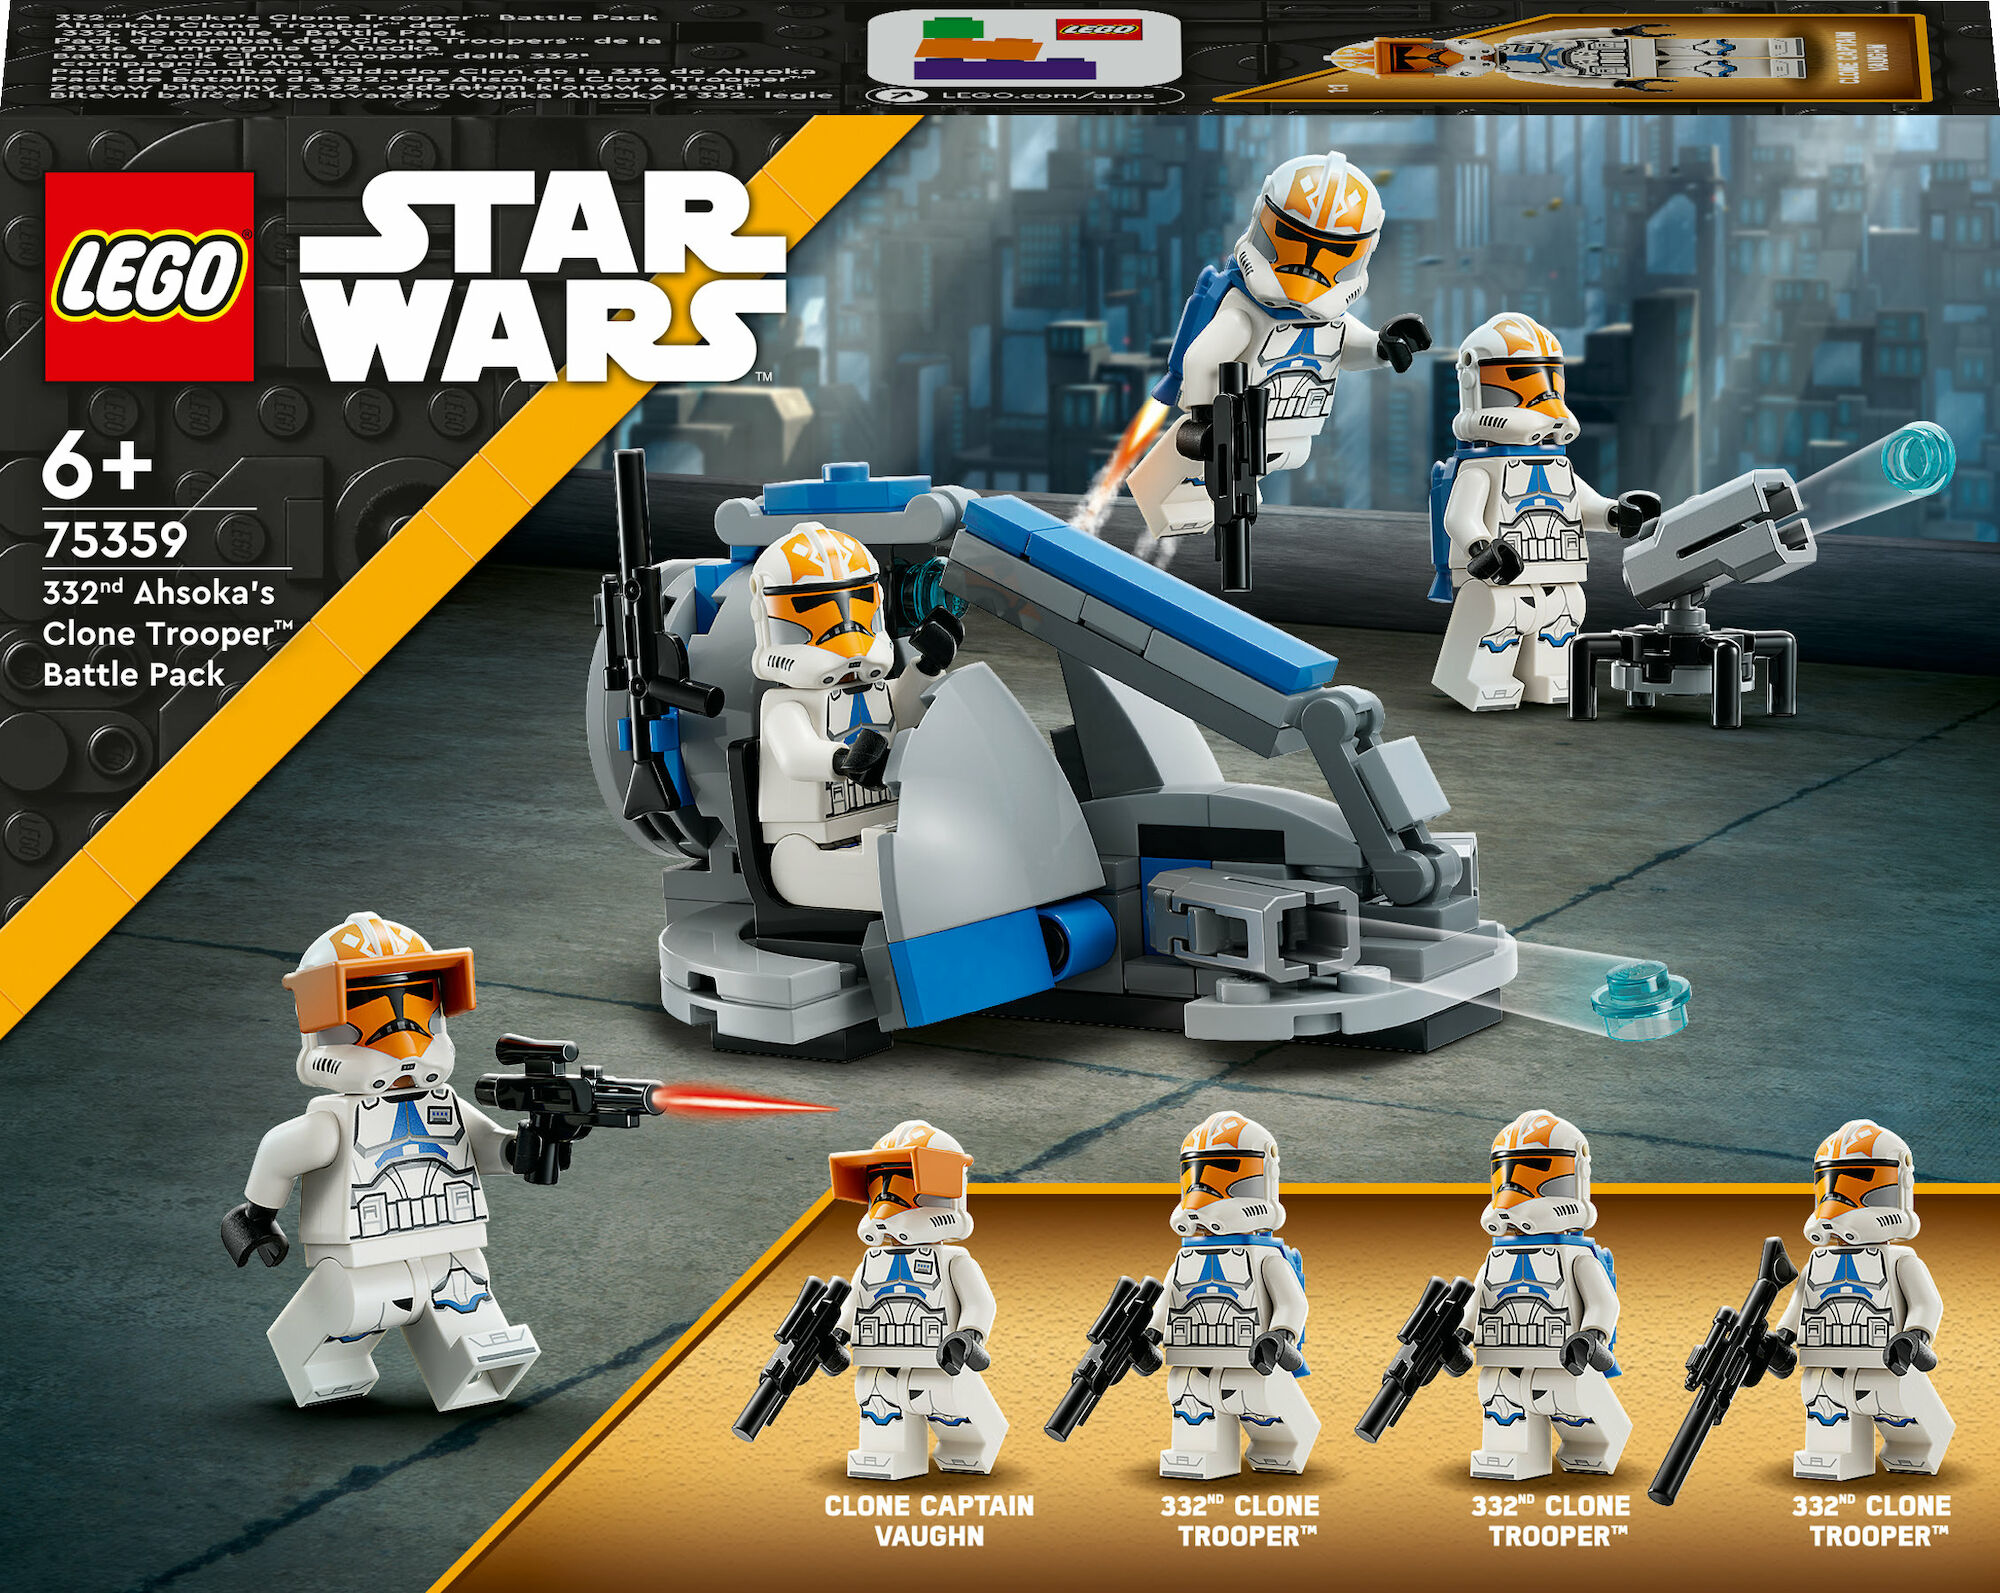 LEGO Star Wars 75359 332nd Ahsoka’s Clone Trooper Battle Pack